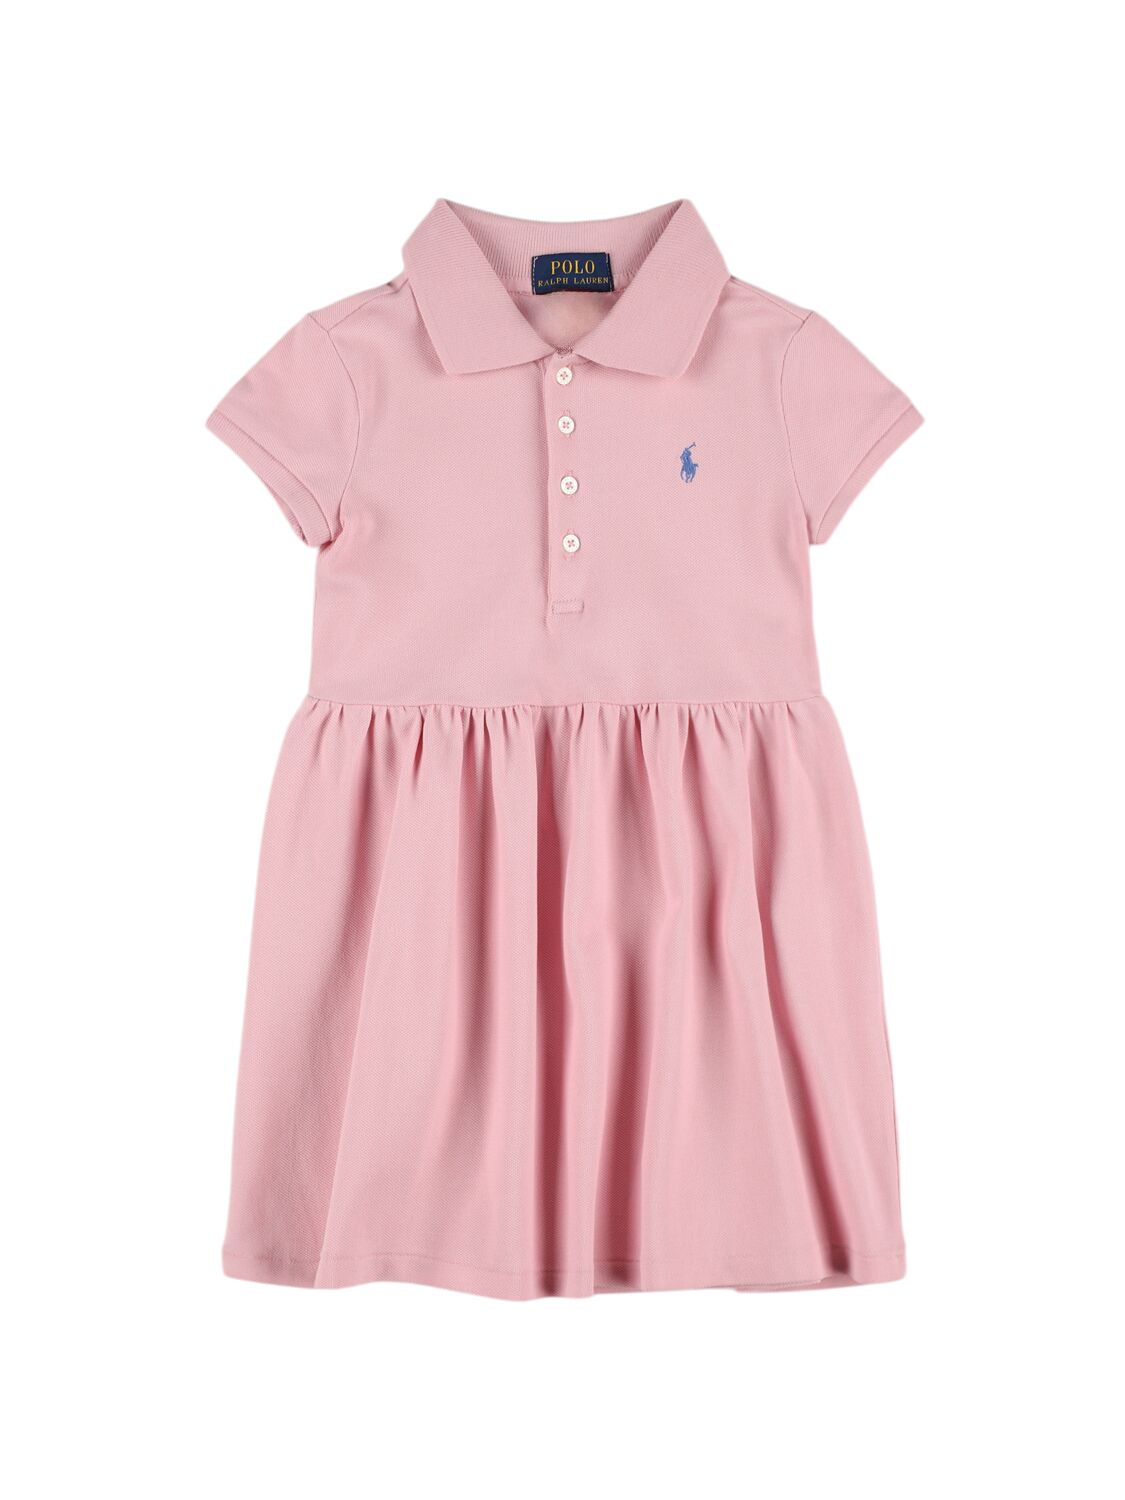 Ralph Lauren Kids' Cotton Blend Piquet Polo Dress In Pink